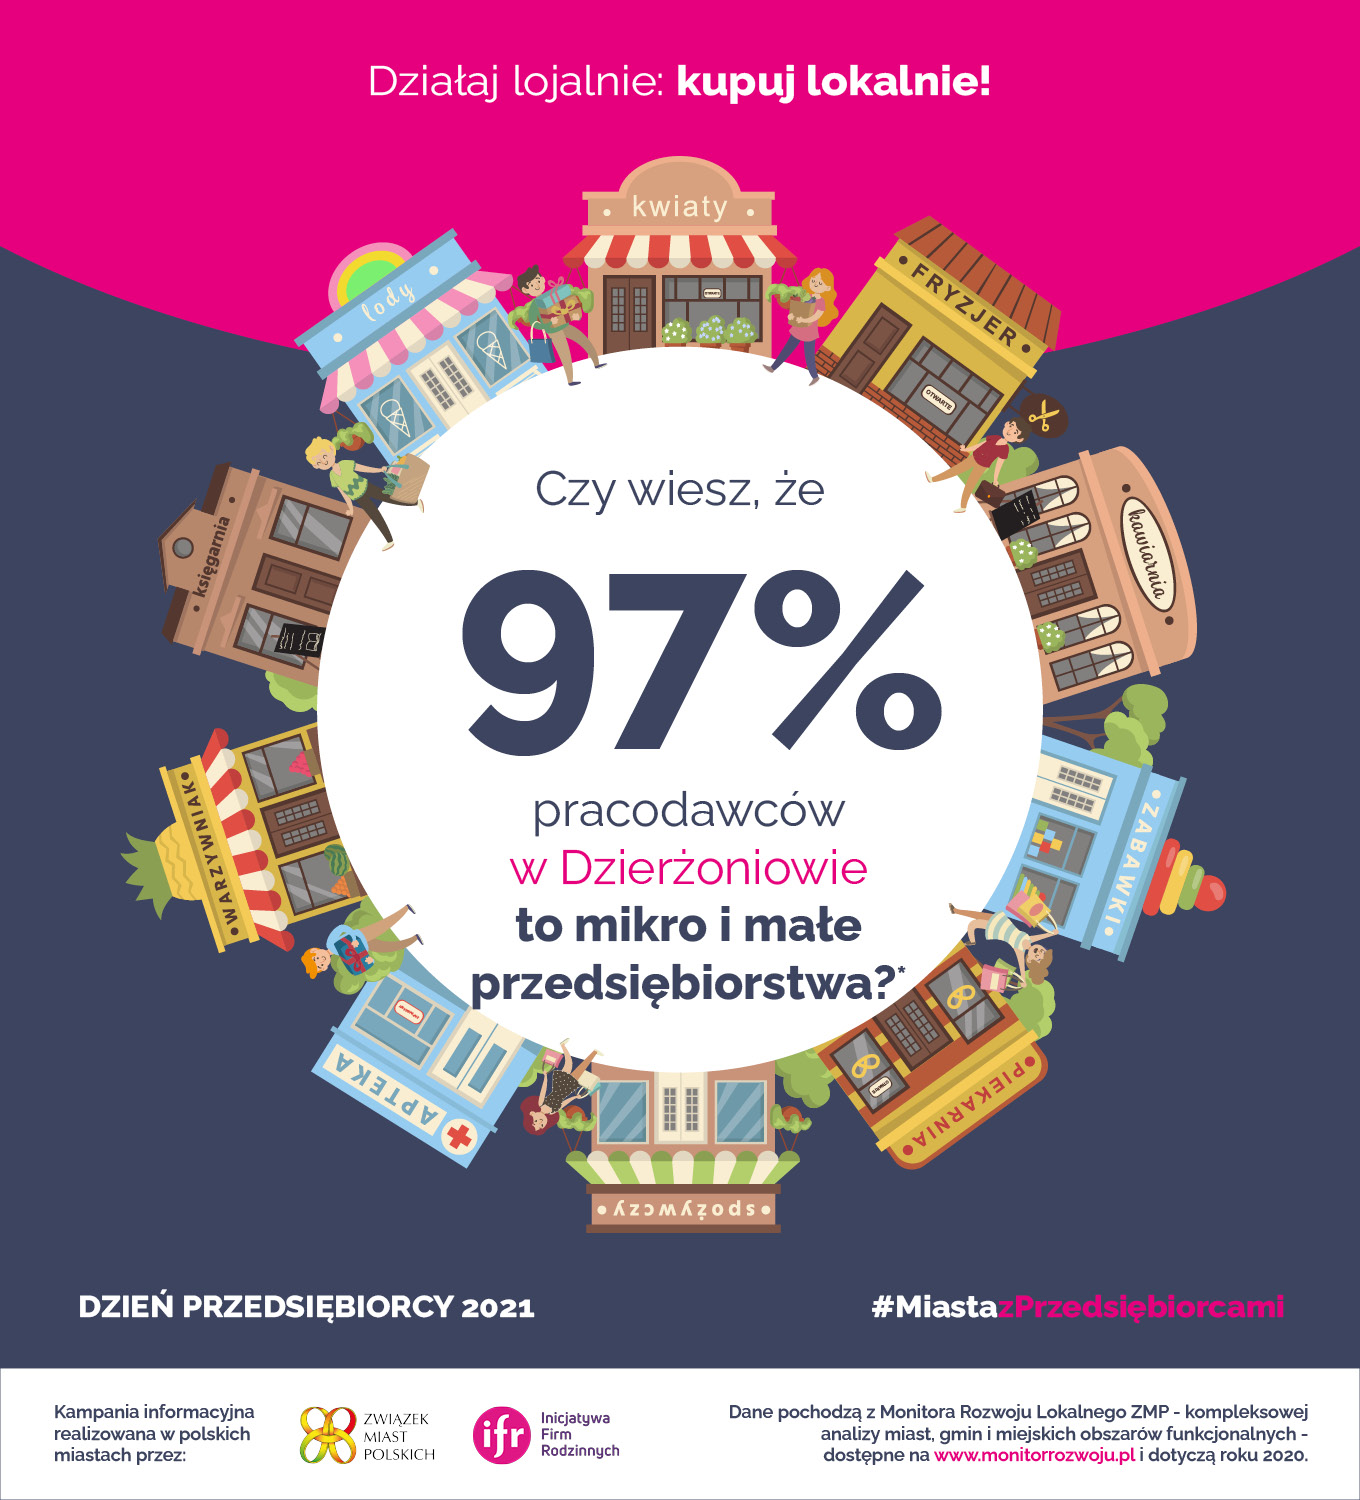 Dzień Przedsiębiorcy 2021. Czy wiesz, że 97% pracodawców w Dzierżoniowie to mikro i małe przedsiebiorstwa?